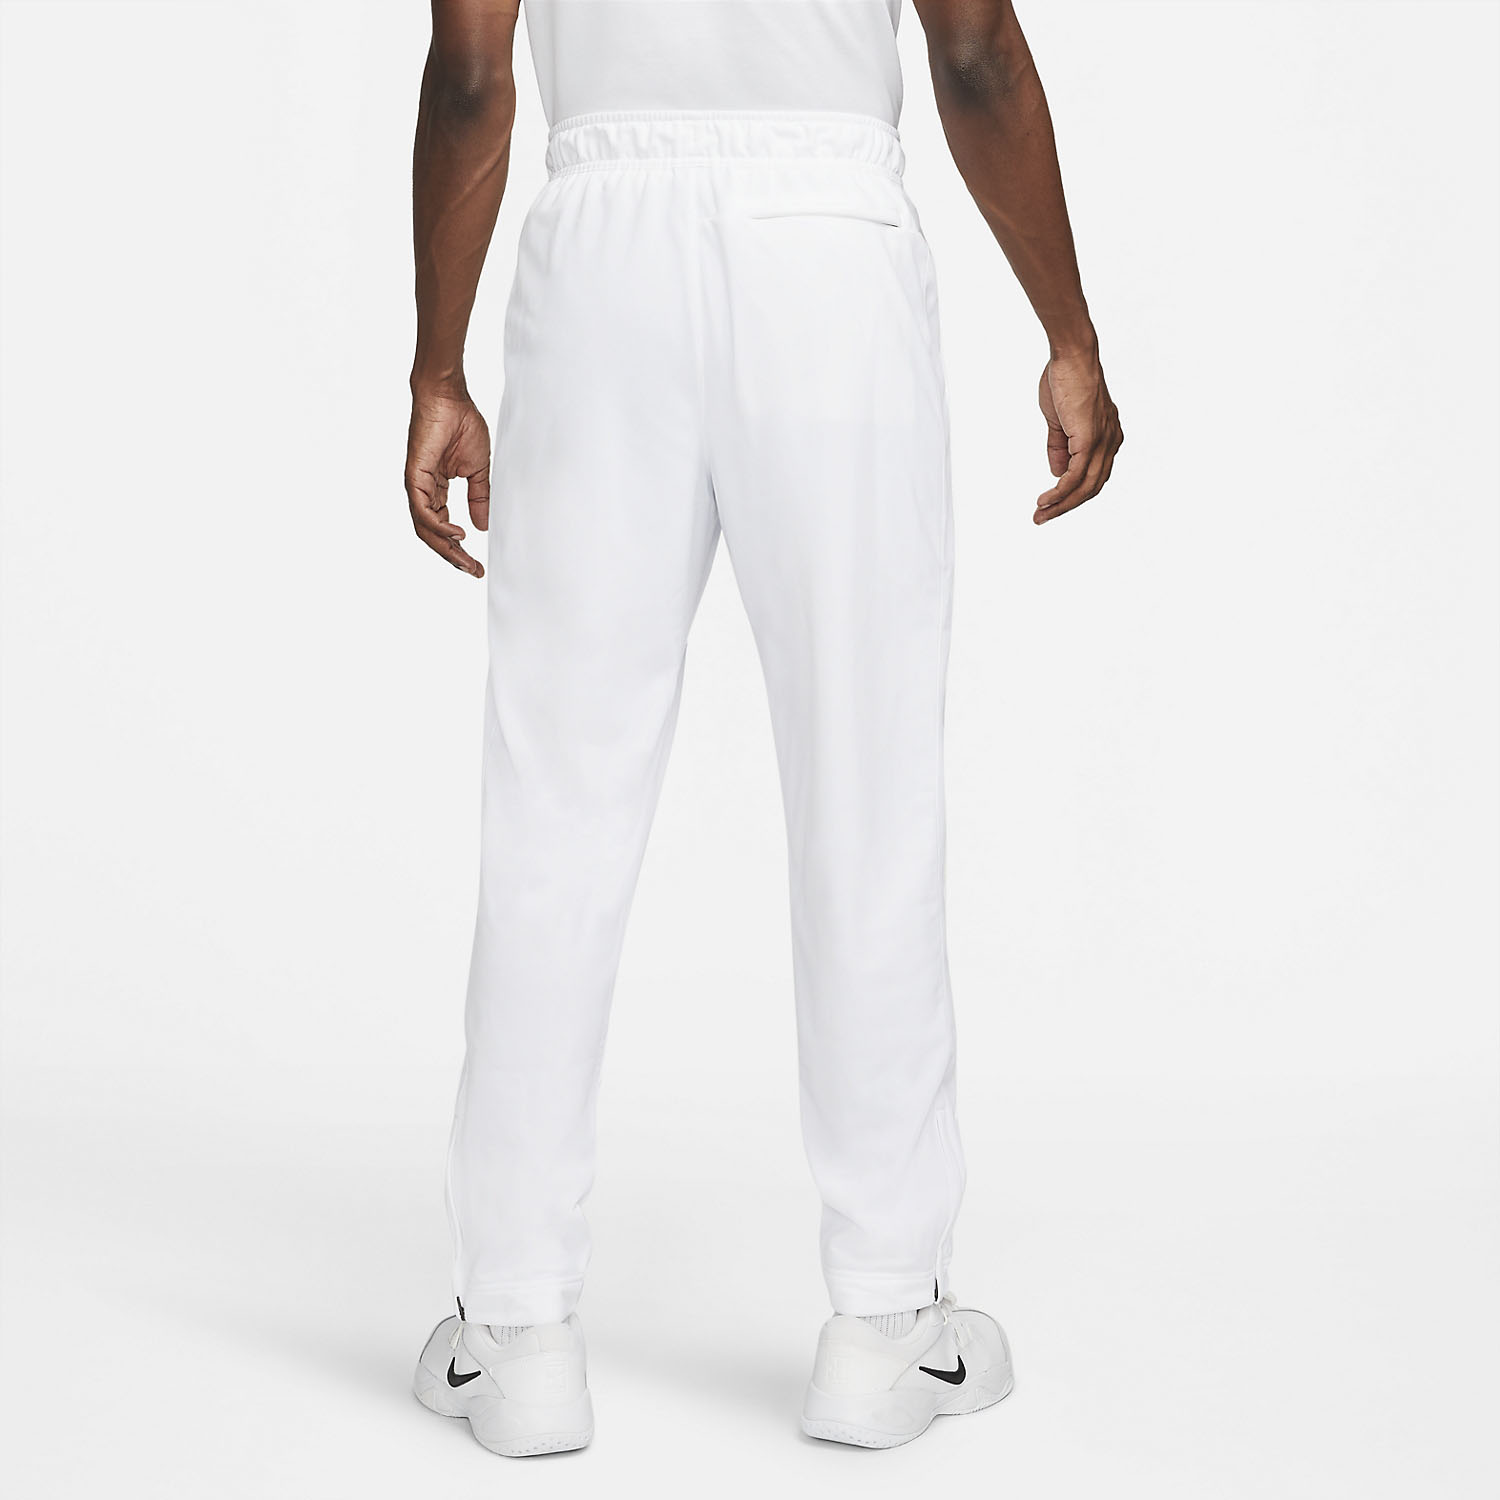 Nike Heritage Men's Tennis Pants - White